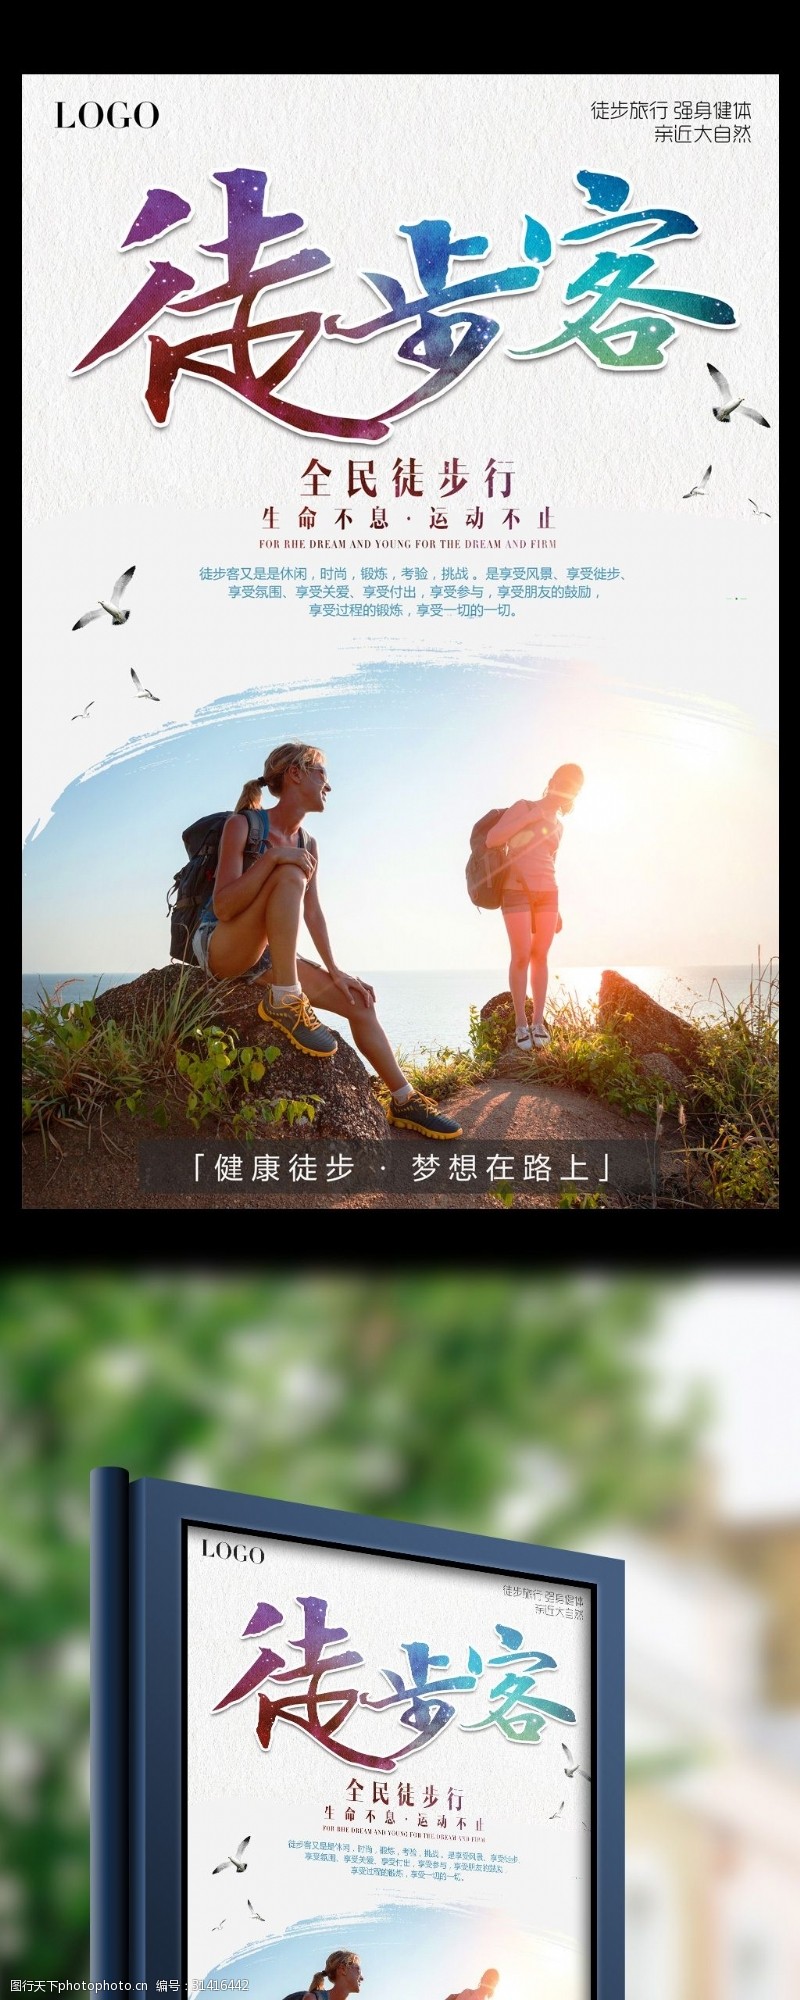 徒步登山2017年白色户外徒步客体育运动健身宣传海报